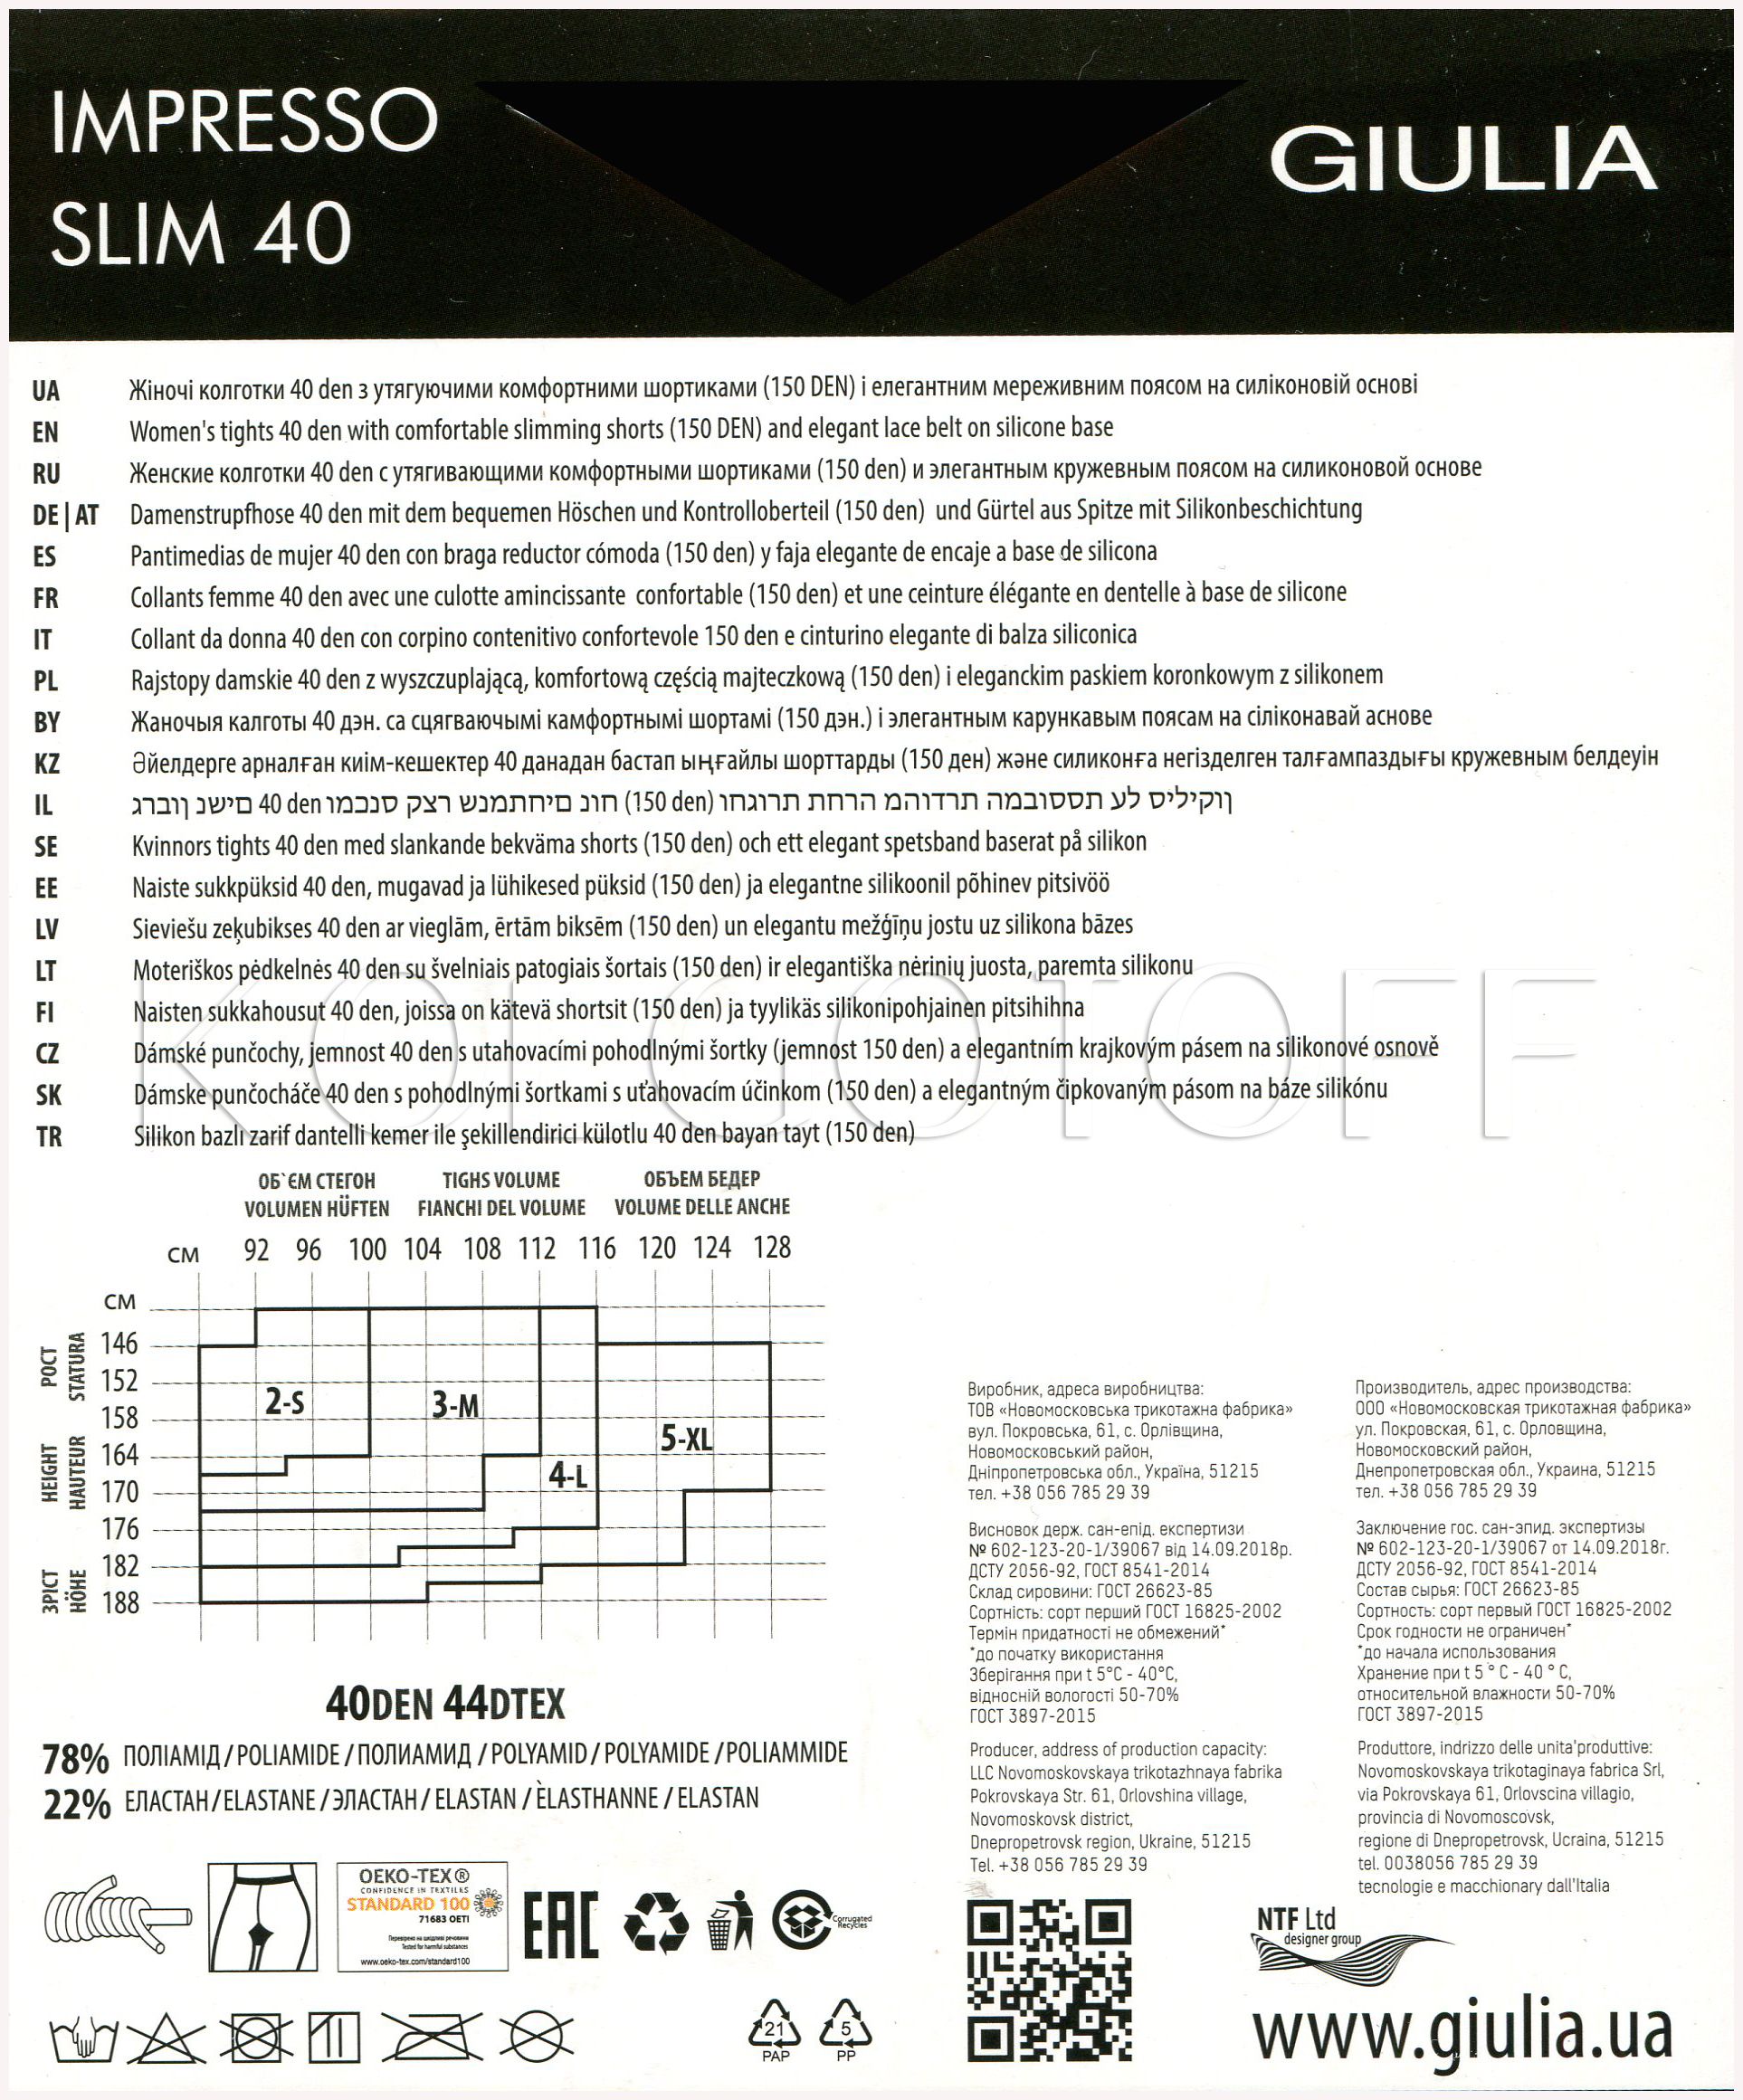 Колготки корректирующие с силиконовым поясом GIULIA Impresso Slim 40